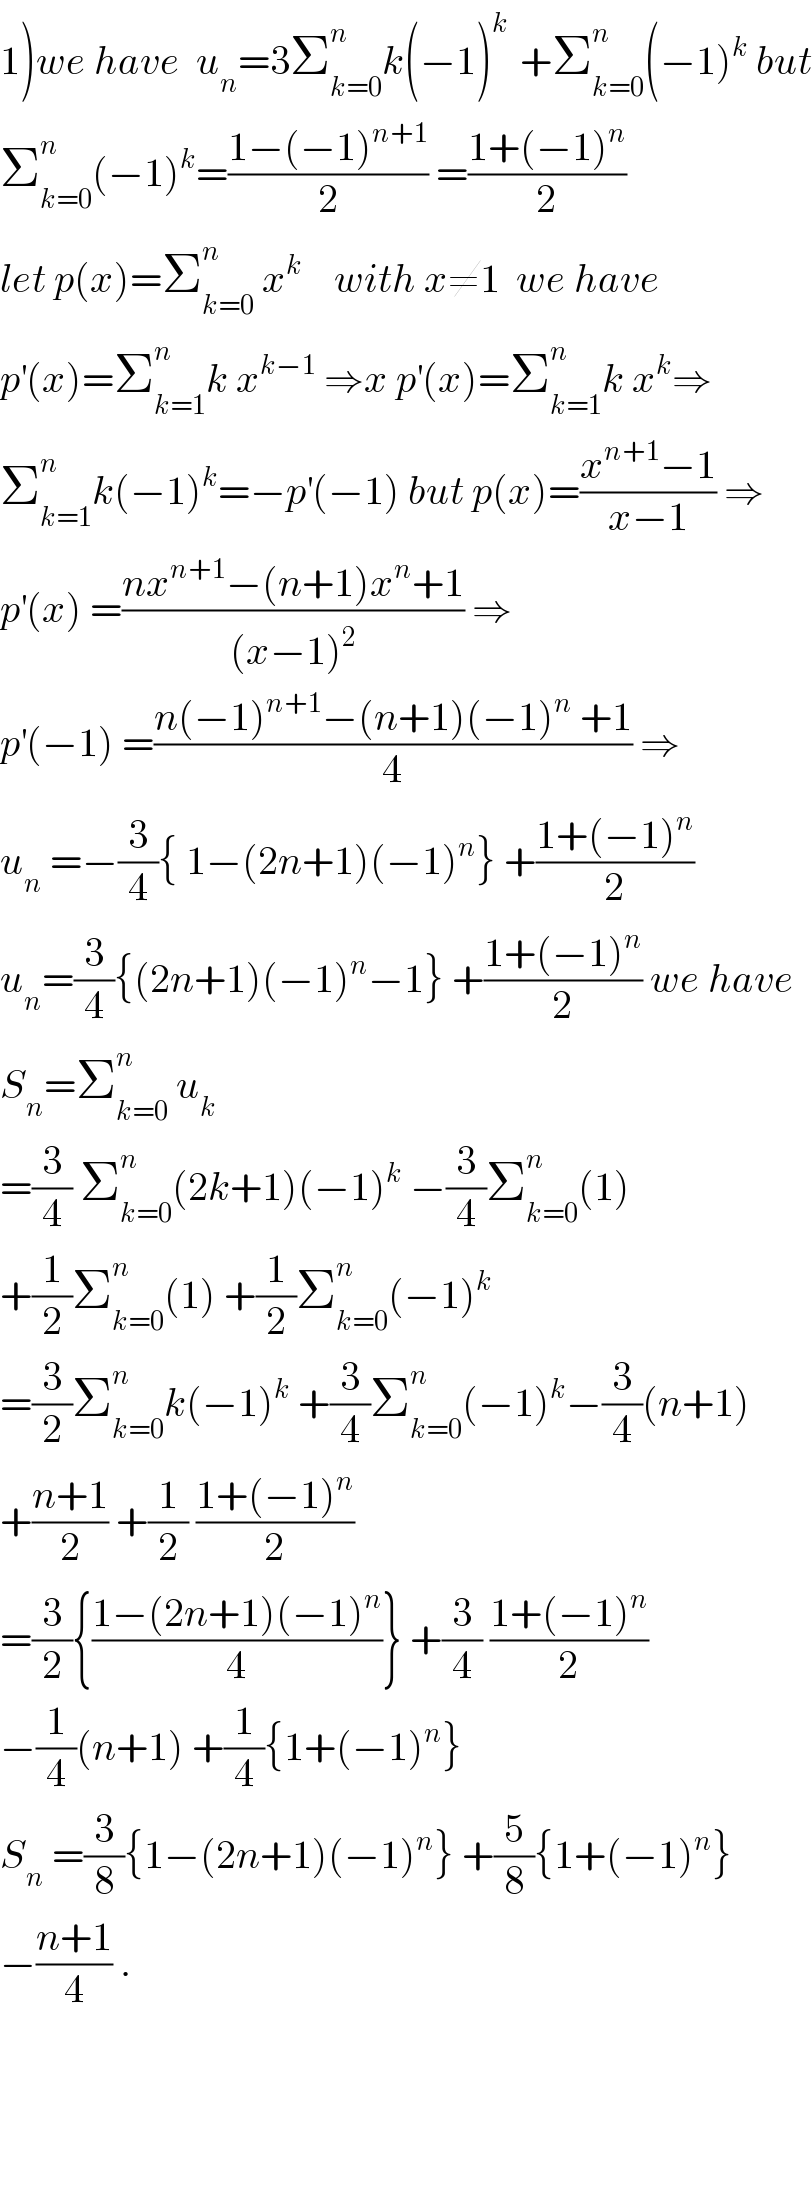 1)we have  u_n =3Σ_(k=0) ^n k(−1)^(k )  +Σ_(k=0) ^n (−1)^k  but  Σ_(k=0) ^n (−1)^k =((1−(−1)^(n+1) )/2) =((1+(−1)^n )/2)  let p(x)=Σ_(k=0) ^n  x^k     with x≠1  we have  p^′ (x)=Σ_(k=1) ^n k x^(k−1)  ⇒x p^′ (x)=Σ_(k=1) ^n k x^k ⇒  Σ_(k=1) ^n k(−1)^k =−p^′ (−1) but p(x)=((x^(n+1) −1)/(x−1)) ⇒  p^′ (x) =((nx^(n+1) −(n+1)x^n +1)/((x−1)^2 )) ⇒  p^′ (−1) =((n(−1)^(n+1) −(n+1)(−1)^n  +1)/4) ⇒  u_n  =−(3/4){ 1−(2n+1)(−1)^n } +((1+(−1)^n )/2)  u_n =(3/4){(2n+1)(−1)^n −1} +((1+(−1)^n )/2) we have  S_n =Σ_(k=0) ^n  u_k   =(3/4) Σ_(k=0) ^n (2k+1)(−1)^k  −(3/4)Σ_(k=0) ^n (1)  +(1/2)Σ_(k=0) ^n (1) +(1/2)Σ_(k=0) ^n (−1)^k   =(3/2)Σ_(k=0) ^n k(−1)^k  +(3/4)Σ_(k=0) ^n (−1)^k −(3/4)(n+1)  +((n+1)/2) +(1/2) ((1+(−1)^n )/2)  =(3/2){((1−(2n+1)(−1)^n )/4)} +(3/4) ((1+(−1)^n )/2)  −(1/4)(n+1) +(1/4){1+(−1)^n }  S_n  =(3/8){1−(2n+1)(−1)^n } +(5/8){1+(−1)^n }  −((n+1)/4) .        